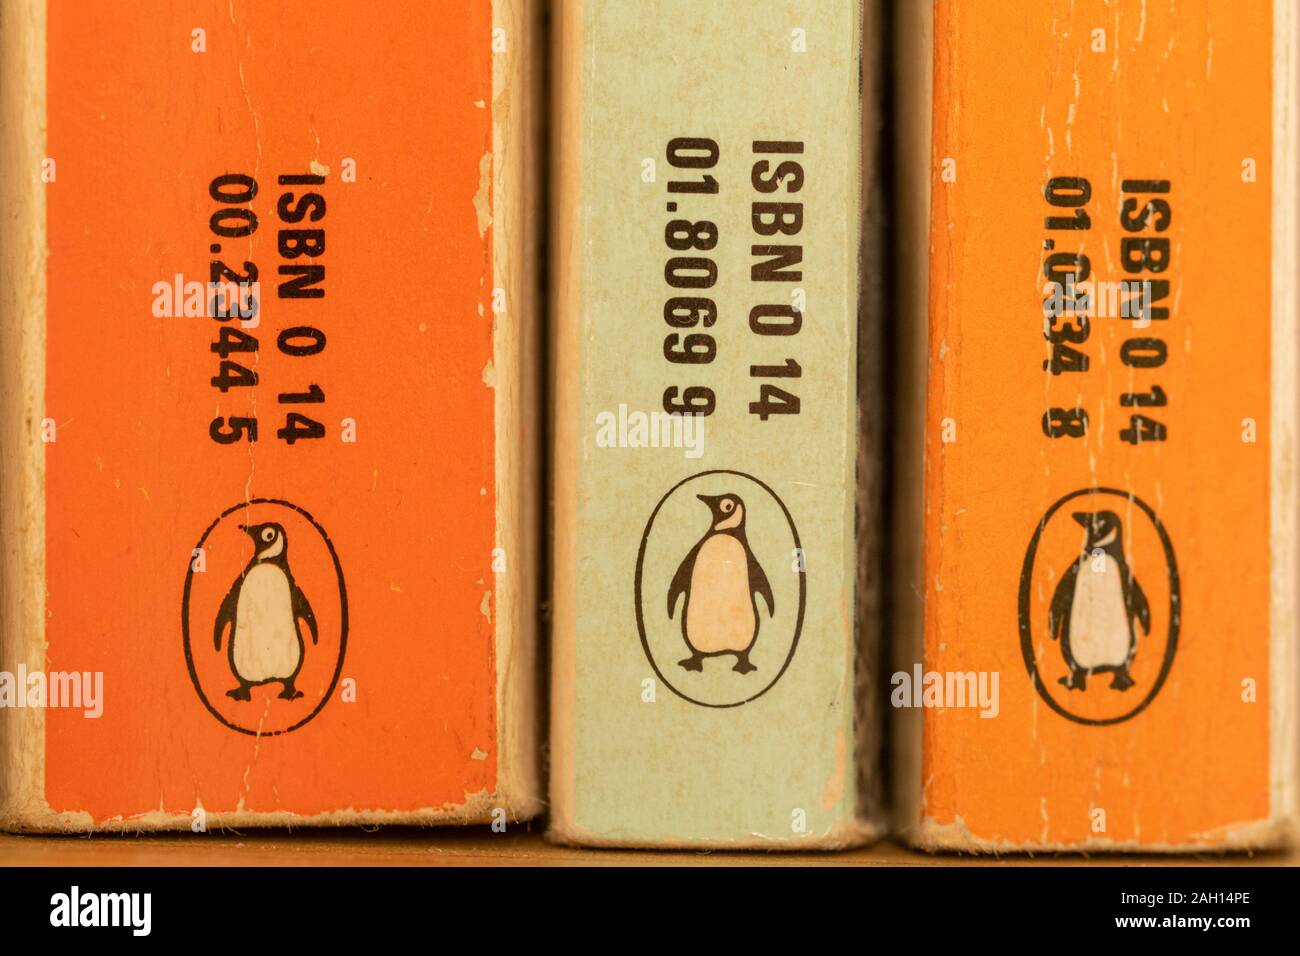 Close-up de los libros publicados por editores, editorial Penguin, editorial Foto de stock